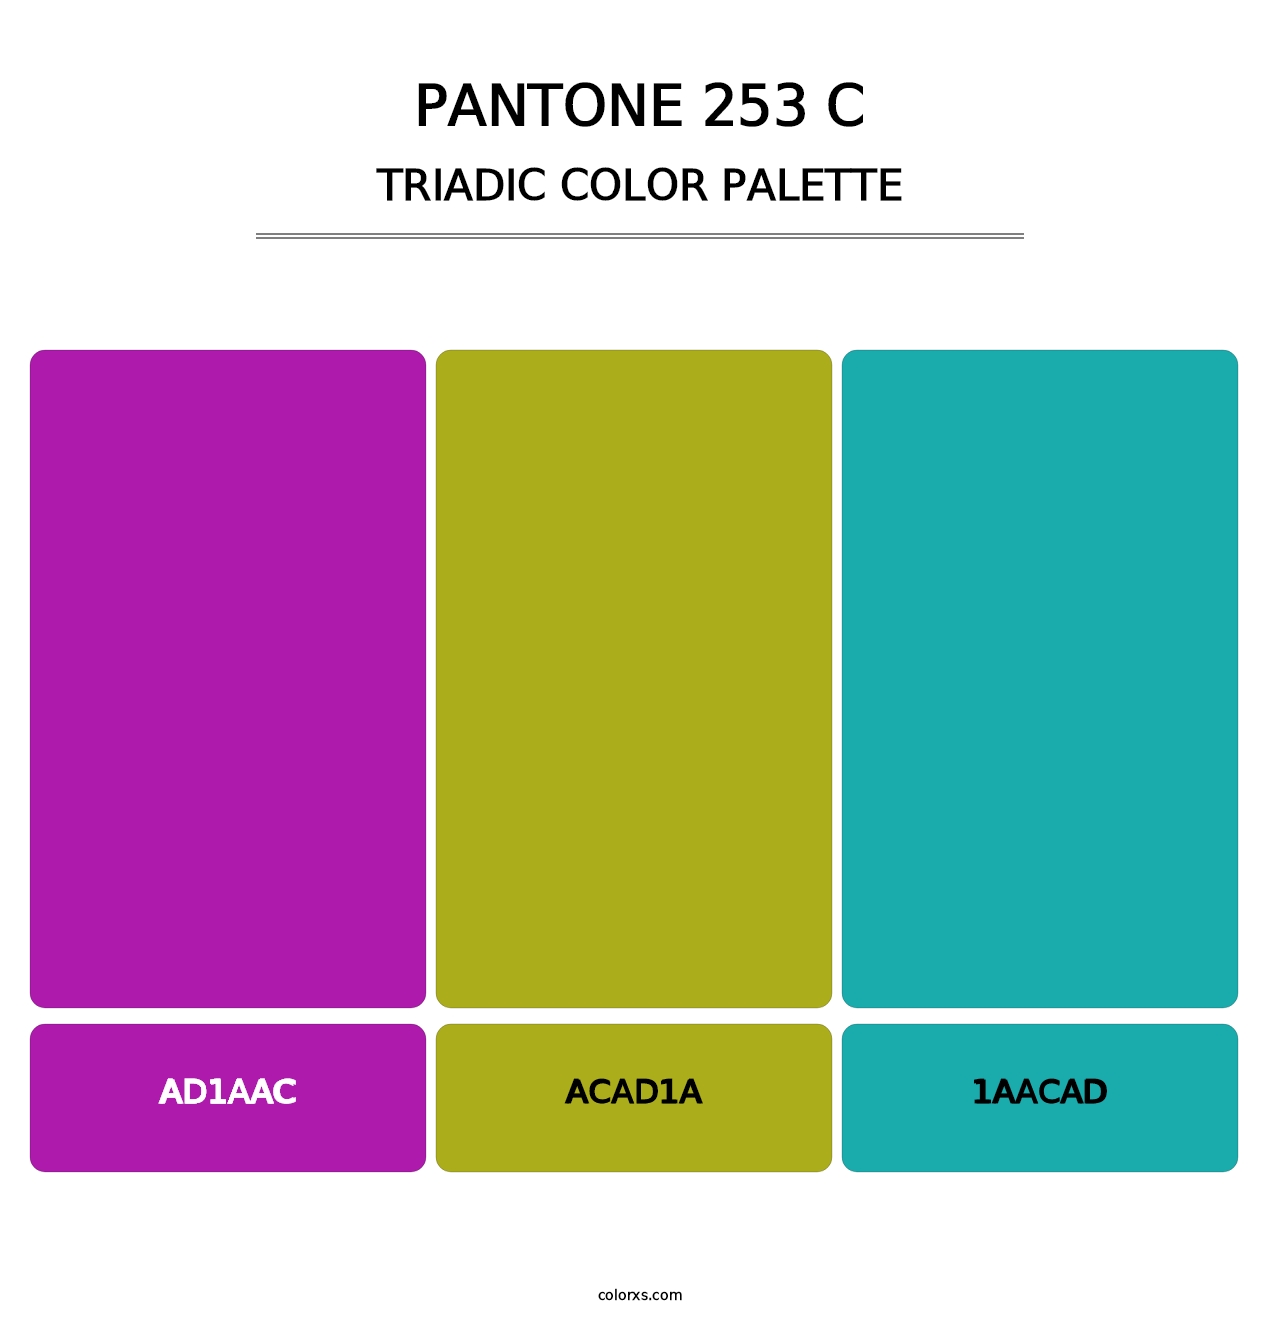 PANTONE 253 C - Triadic Color Palette